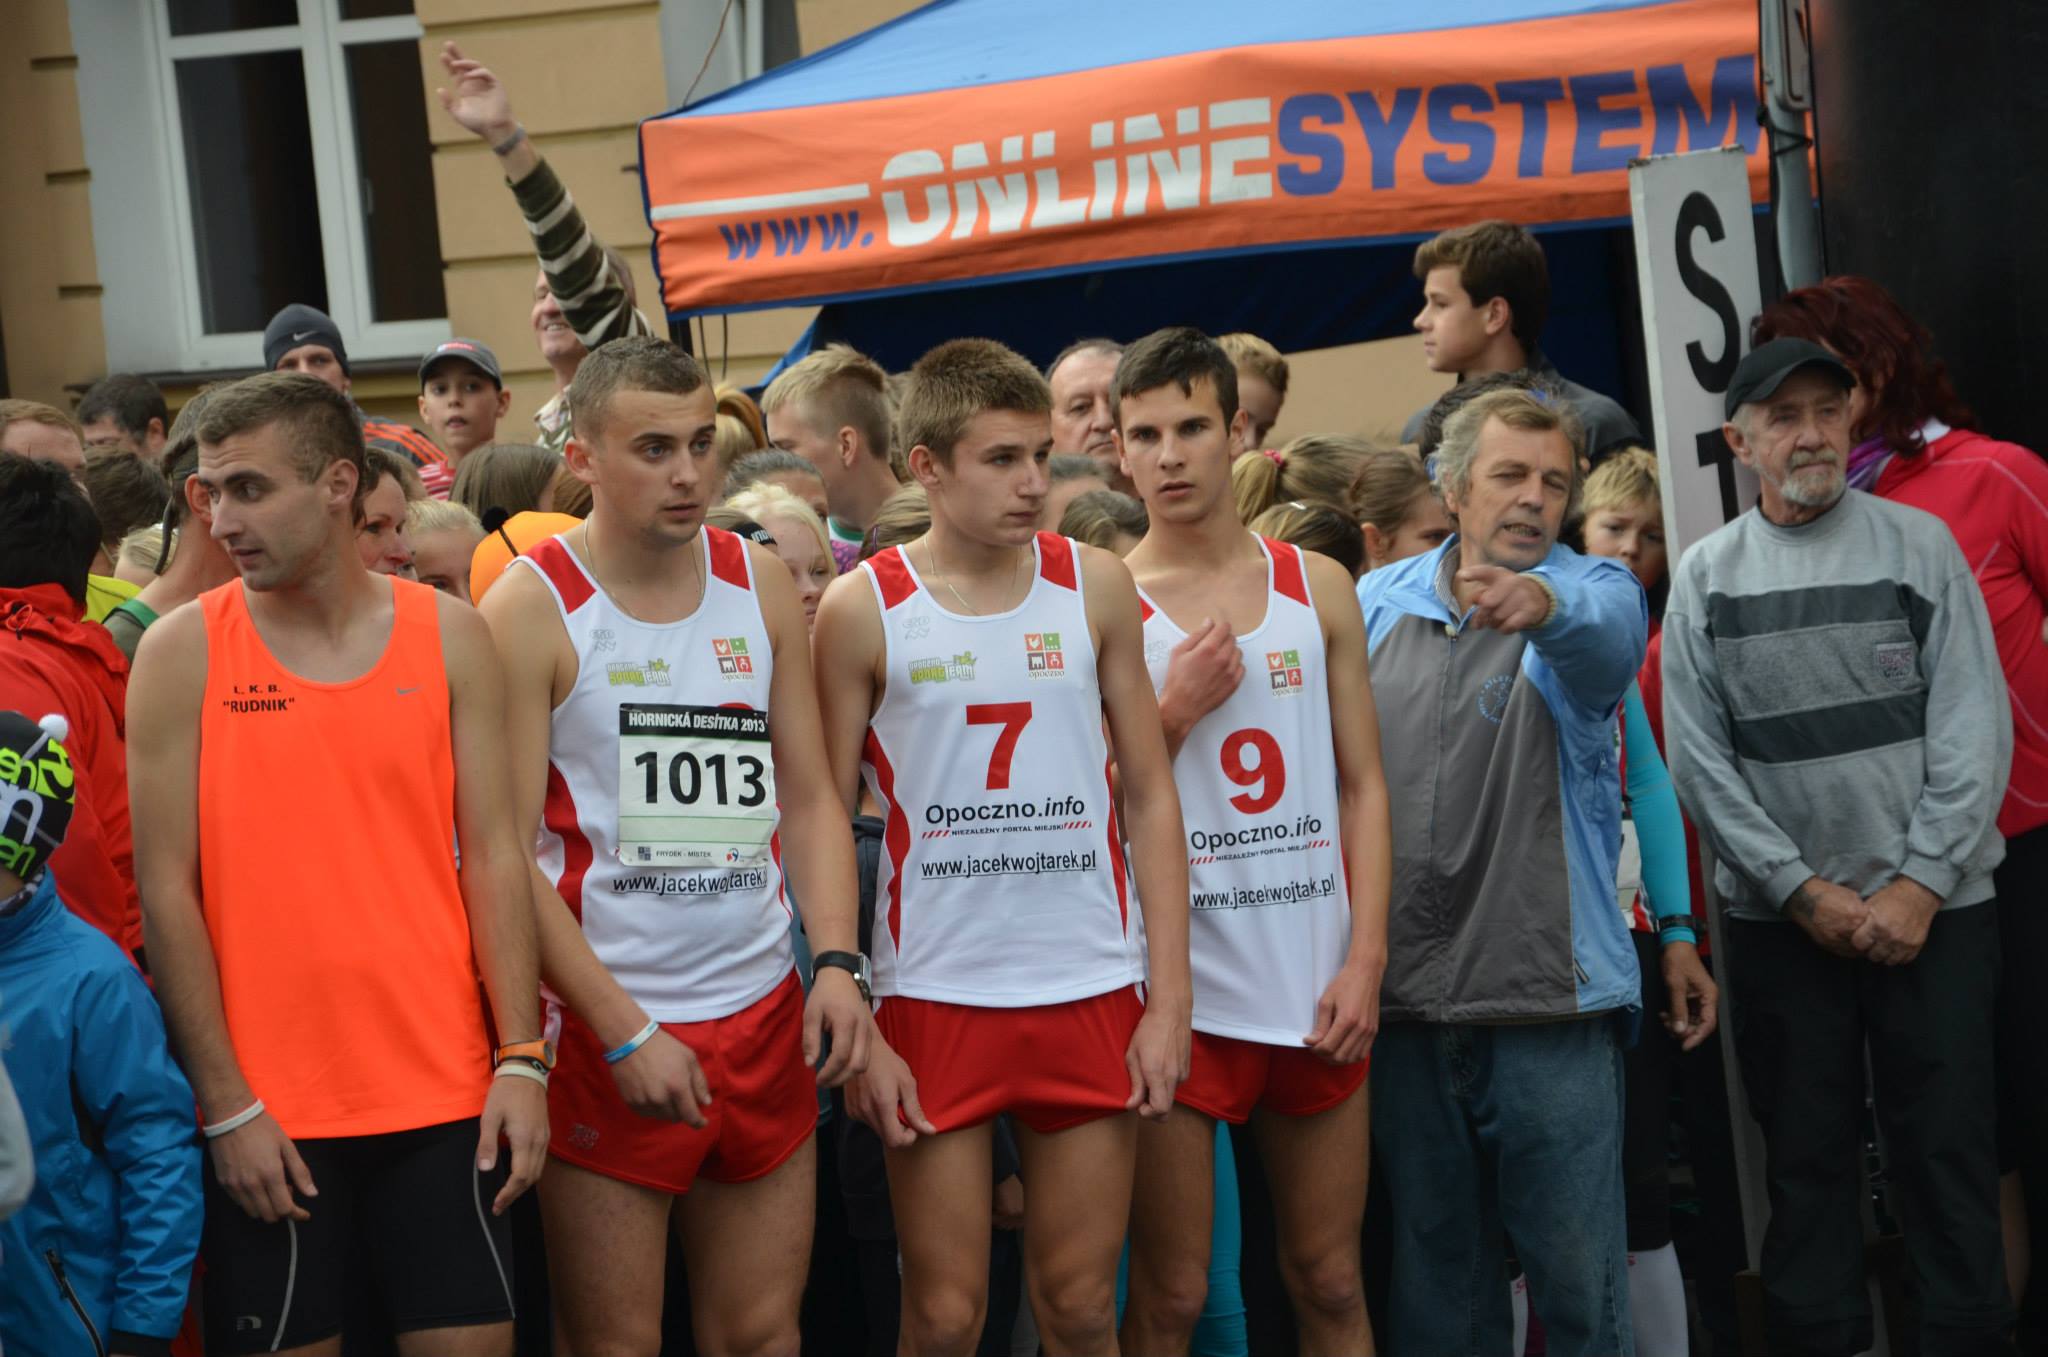 Udany start biegaczy Opoczno Sport Team w Czechach / fot.: Opoczno Sport Team